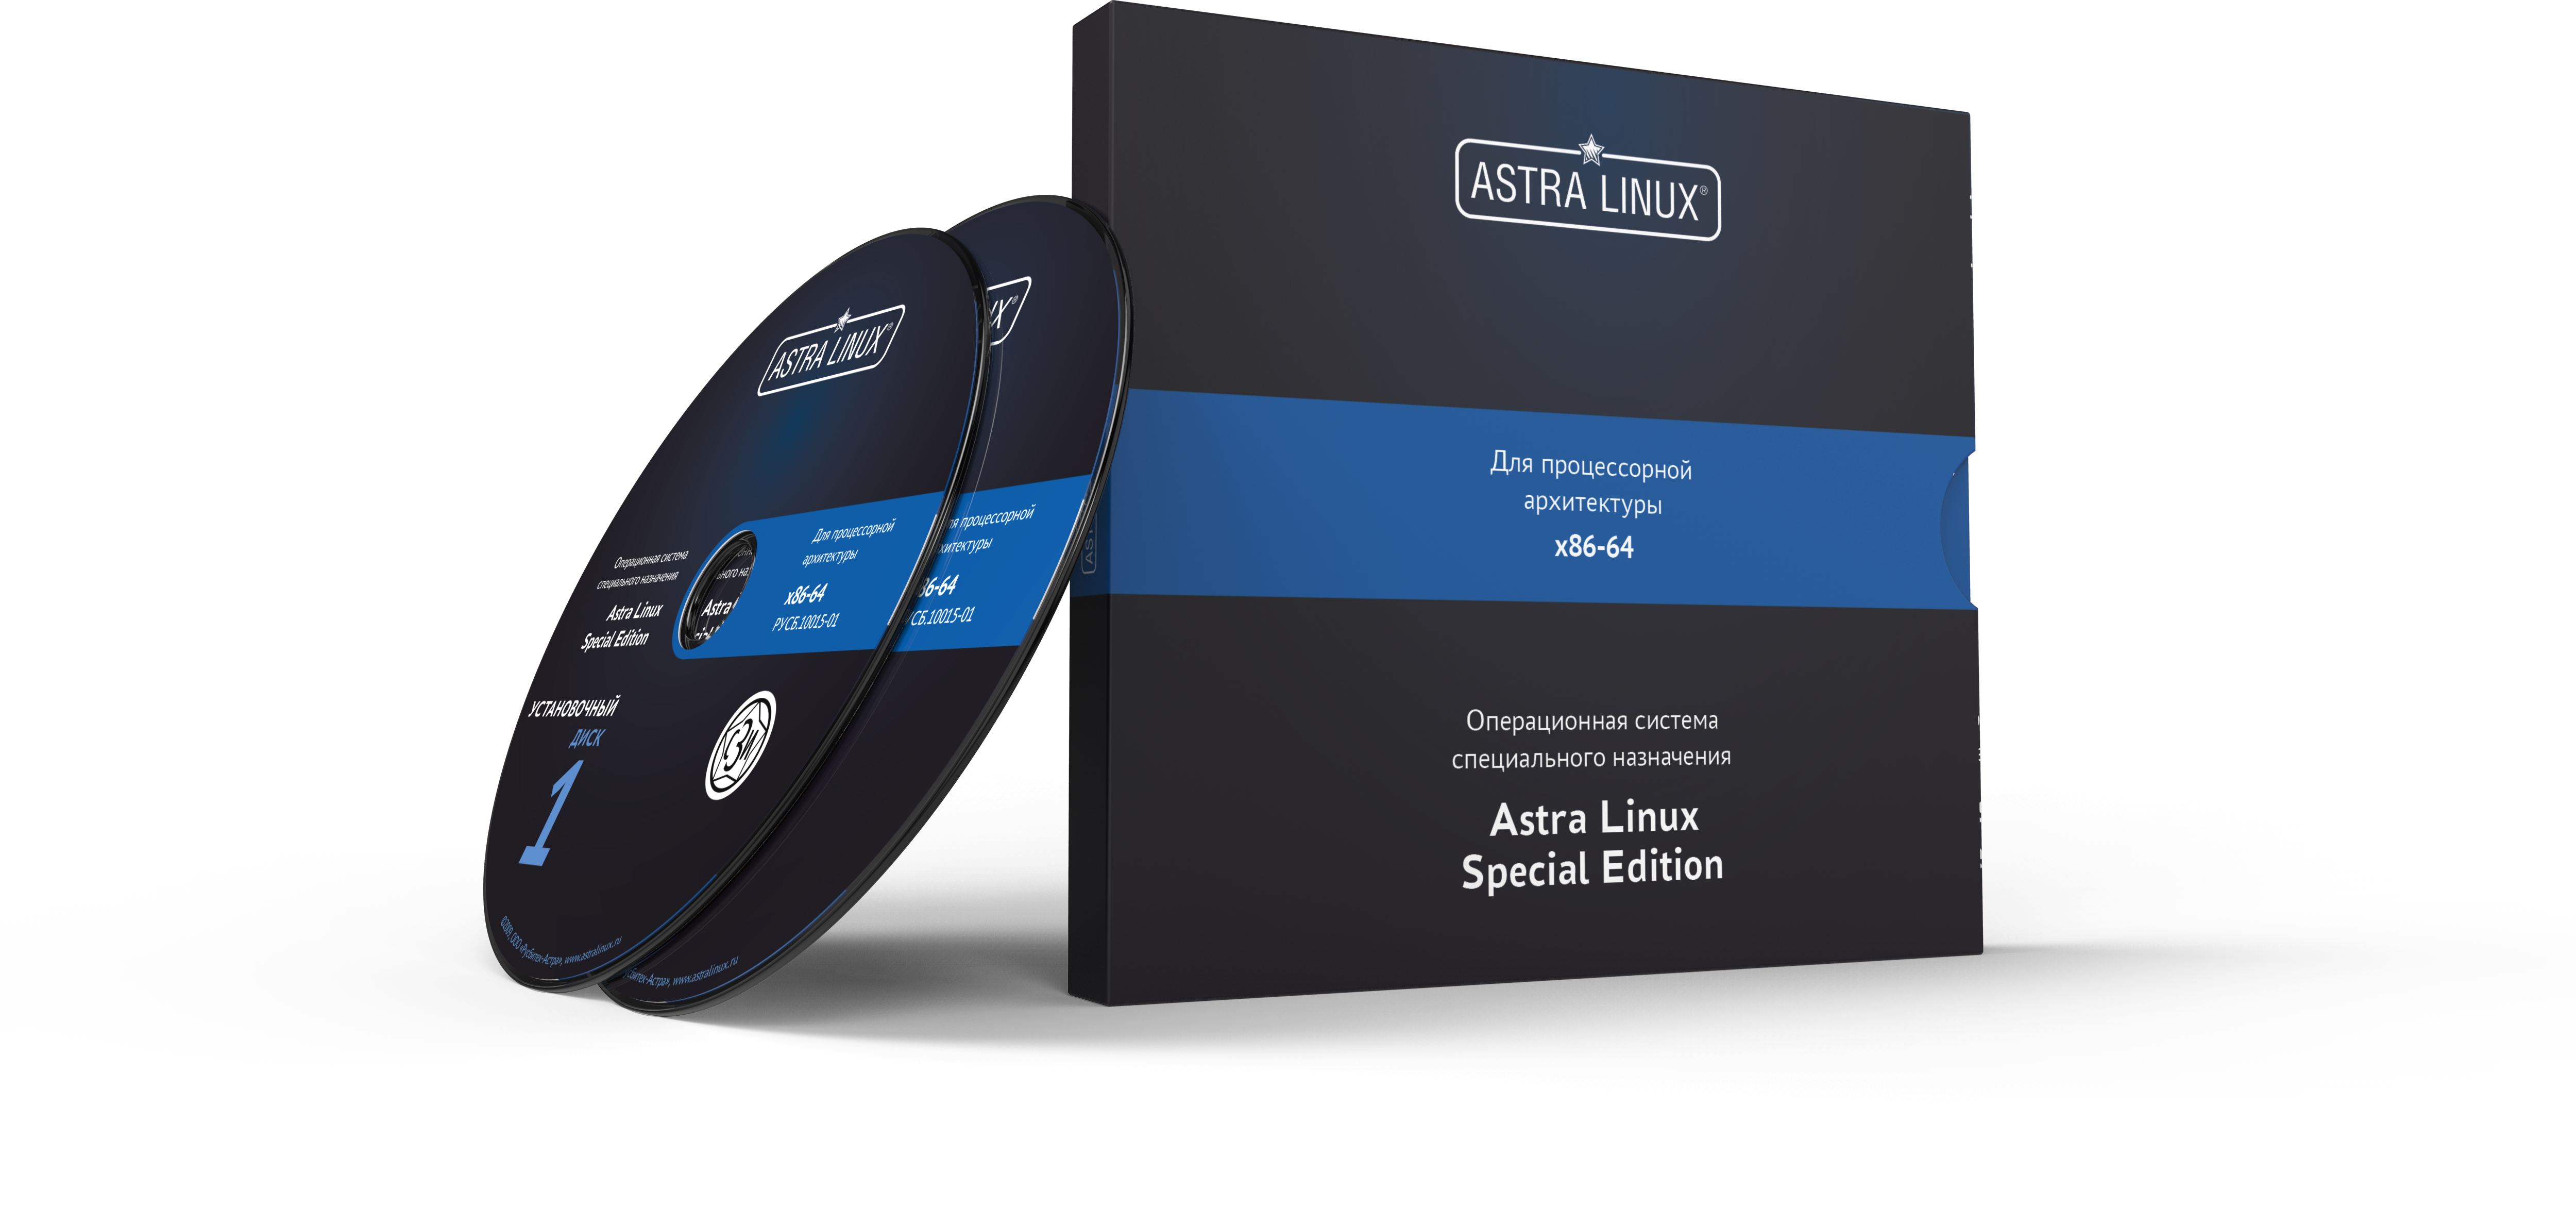 Astra Linux Special Edition 1.7 - Воронеж, для рабочей станции, диск, "Усиленный", на 36 мес., ТП "Привилегированная" на 36 мес.